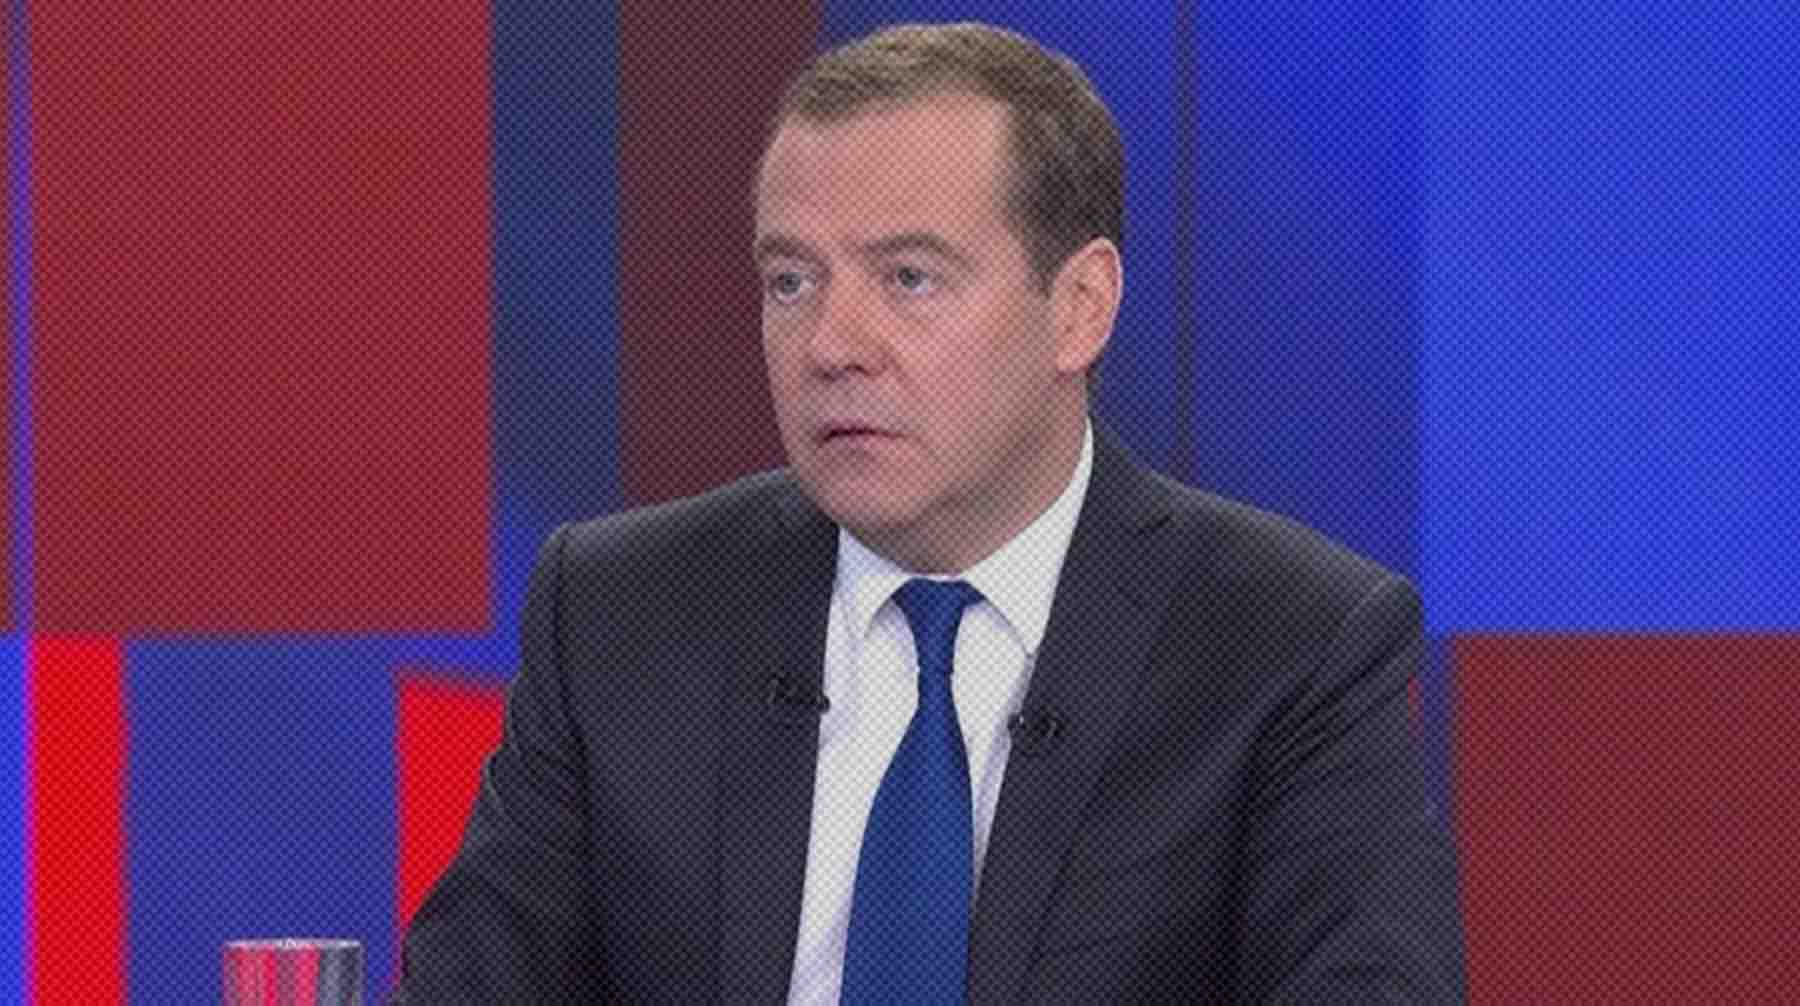 Dailystorm - Медведев предупредил, что размещение в Польше ядерного оружия грозит его применением из-за «патентованных дегенератов» во власти